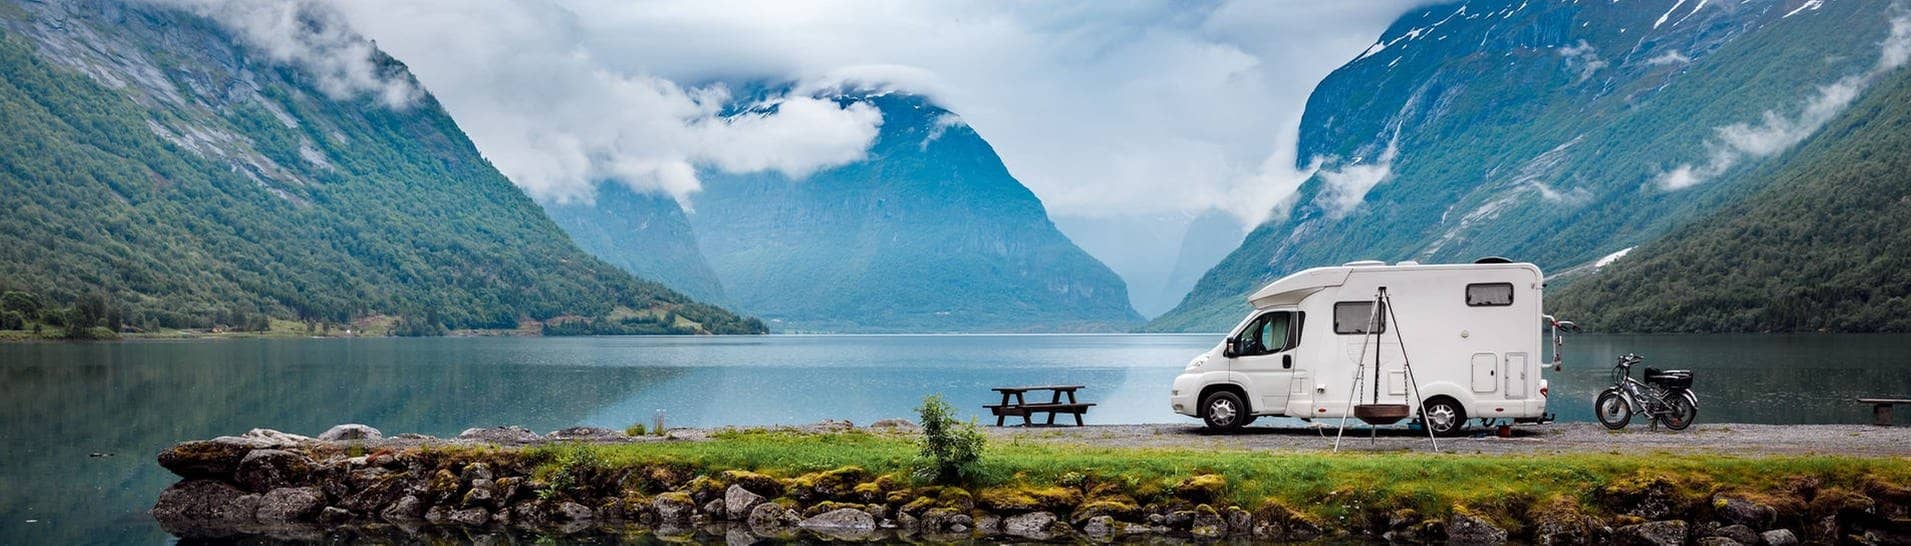 Wohnmobil vor Berg-Panorama an einem See